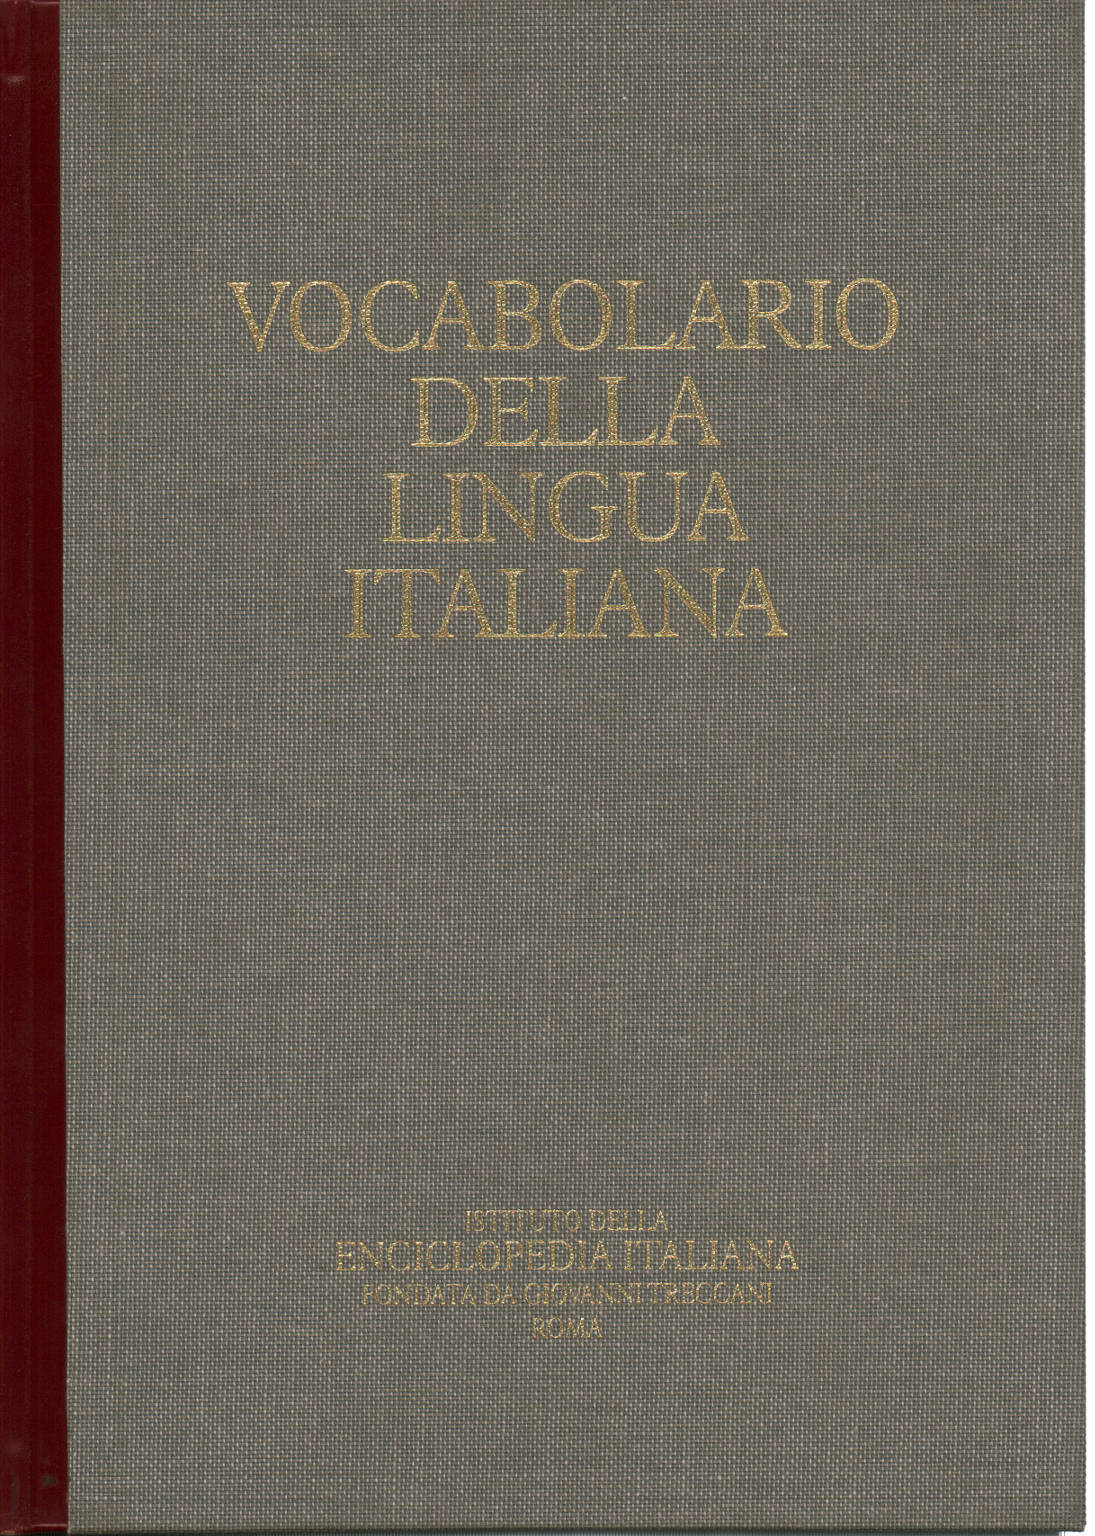 Vocabolario della lingua italiana CD-ROM, AA.VV.